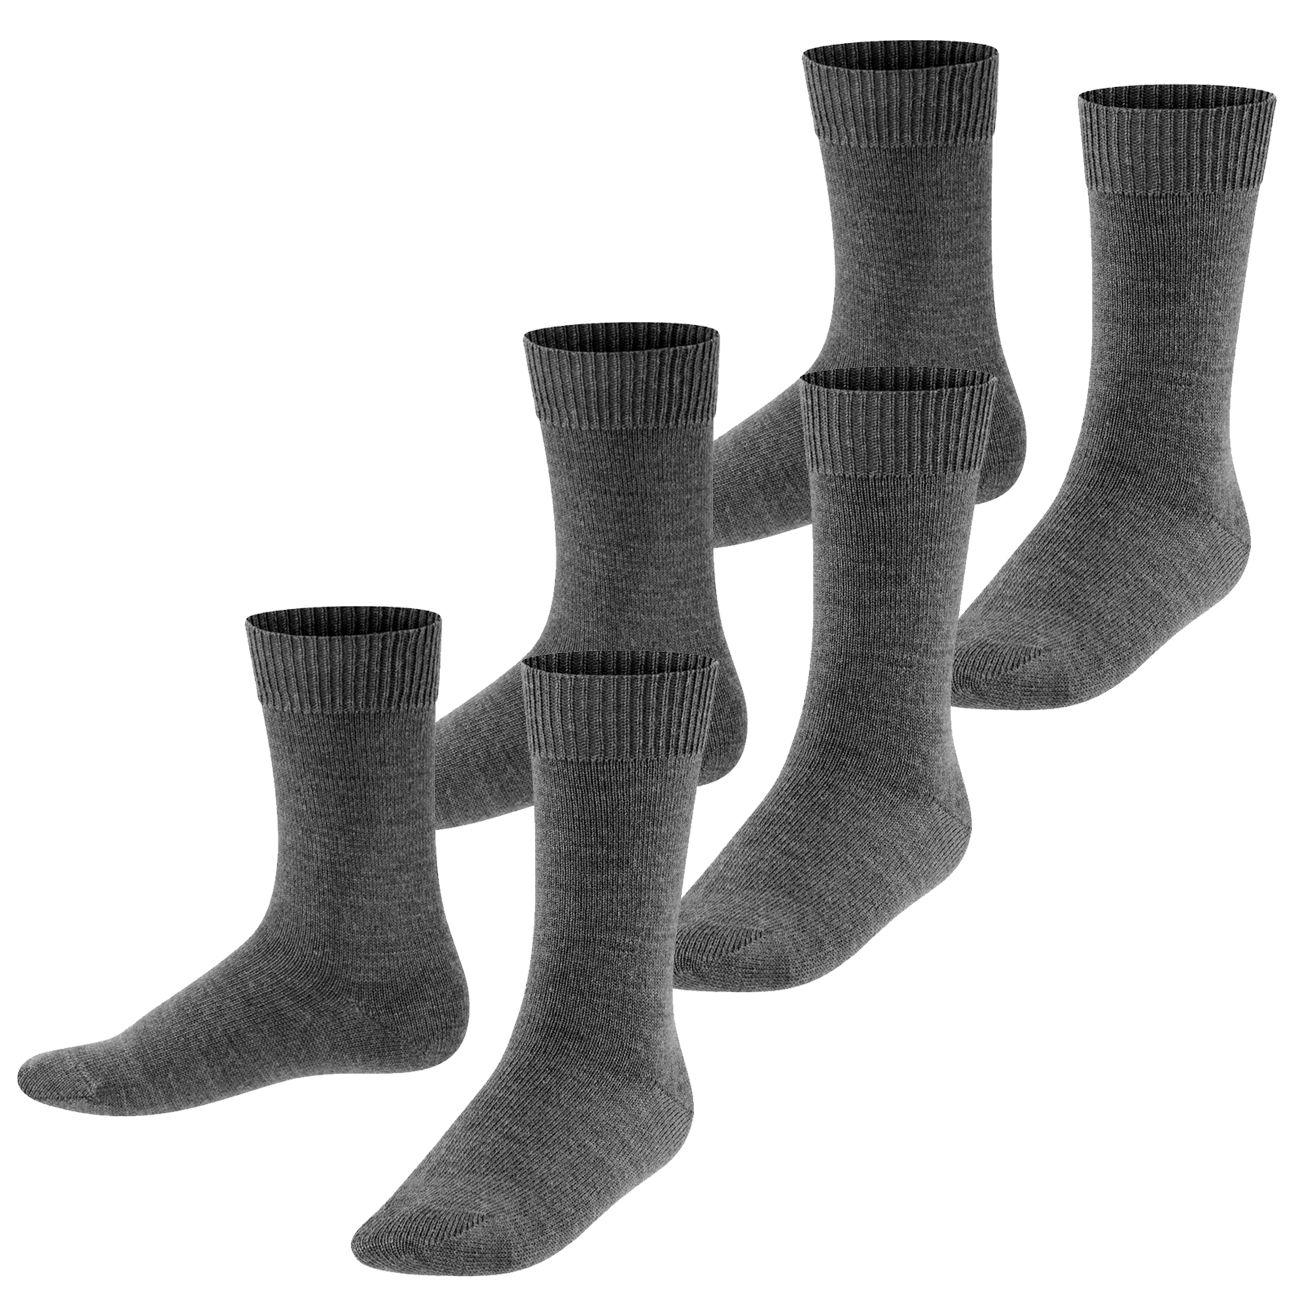 Falke Kinder Socken Comfort Wool 2er 3er 4er Multipack Hersteller: Falke Bestellnummer:4063499029736